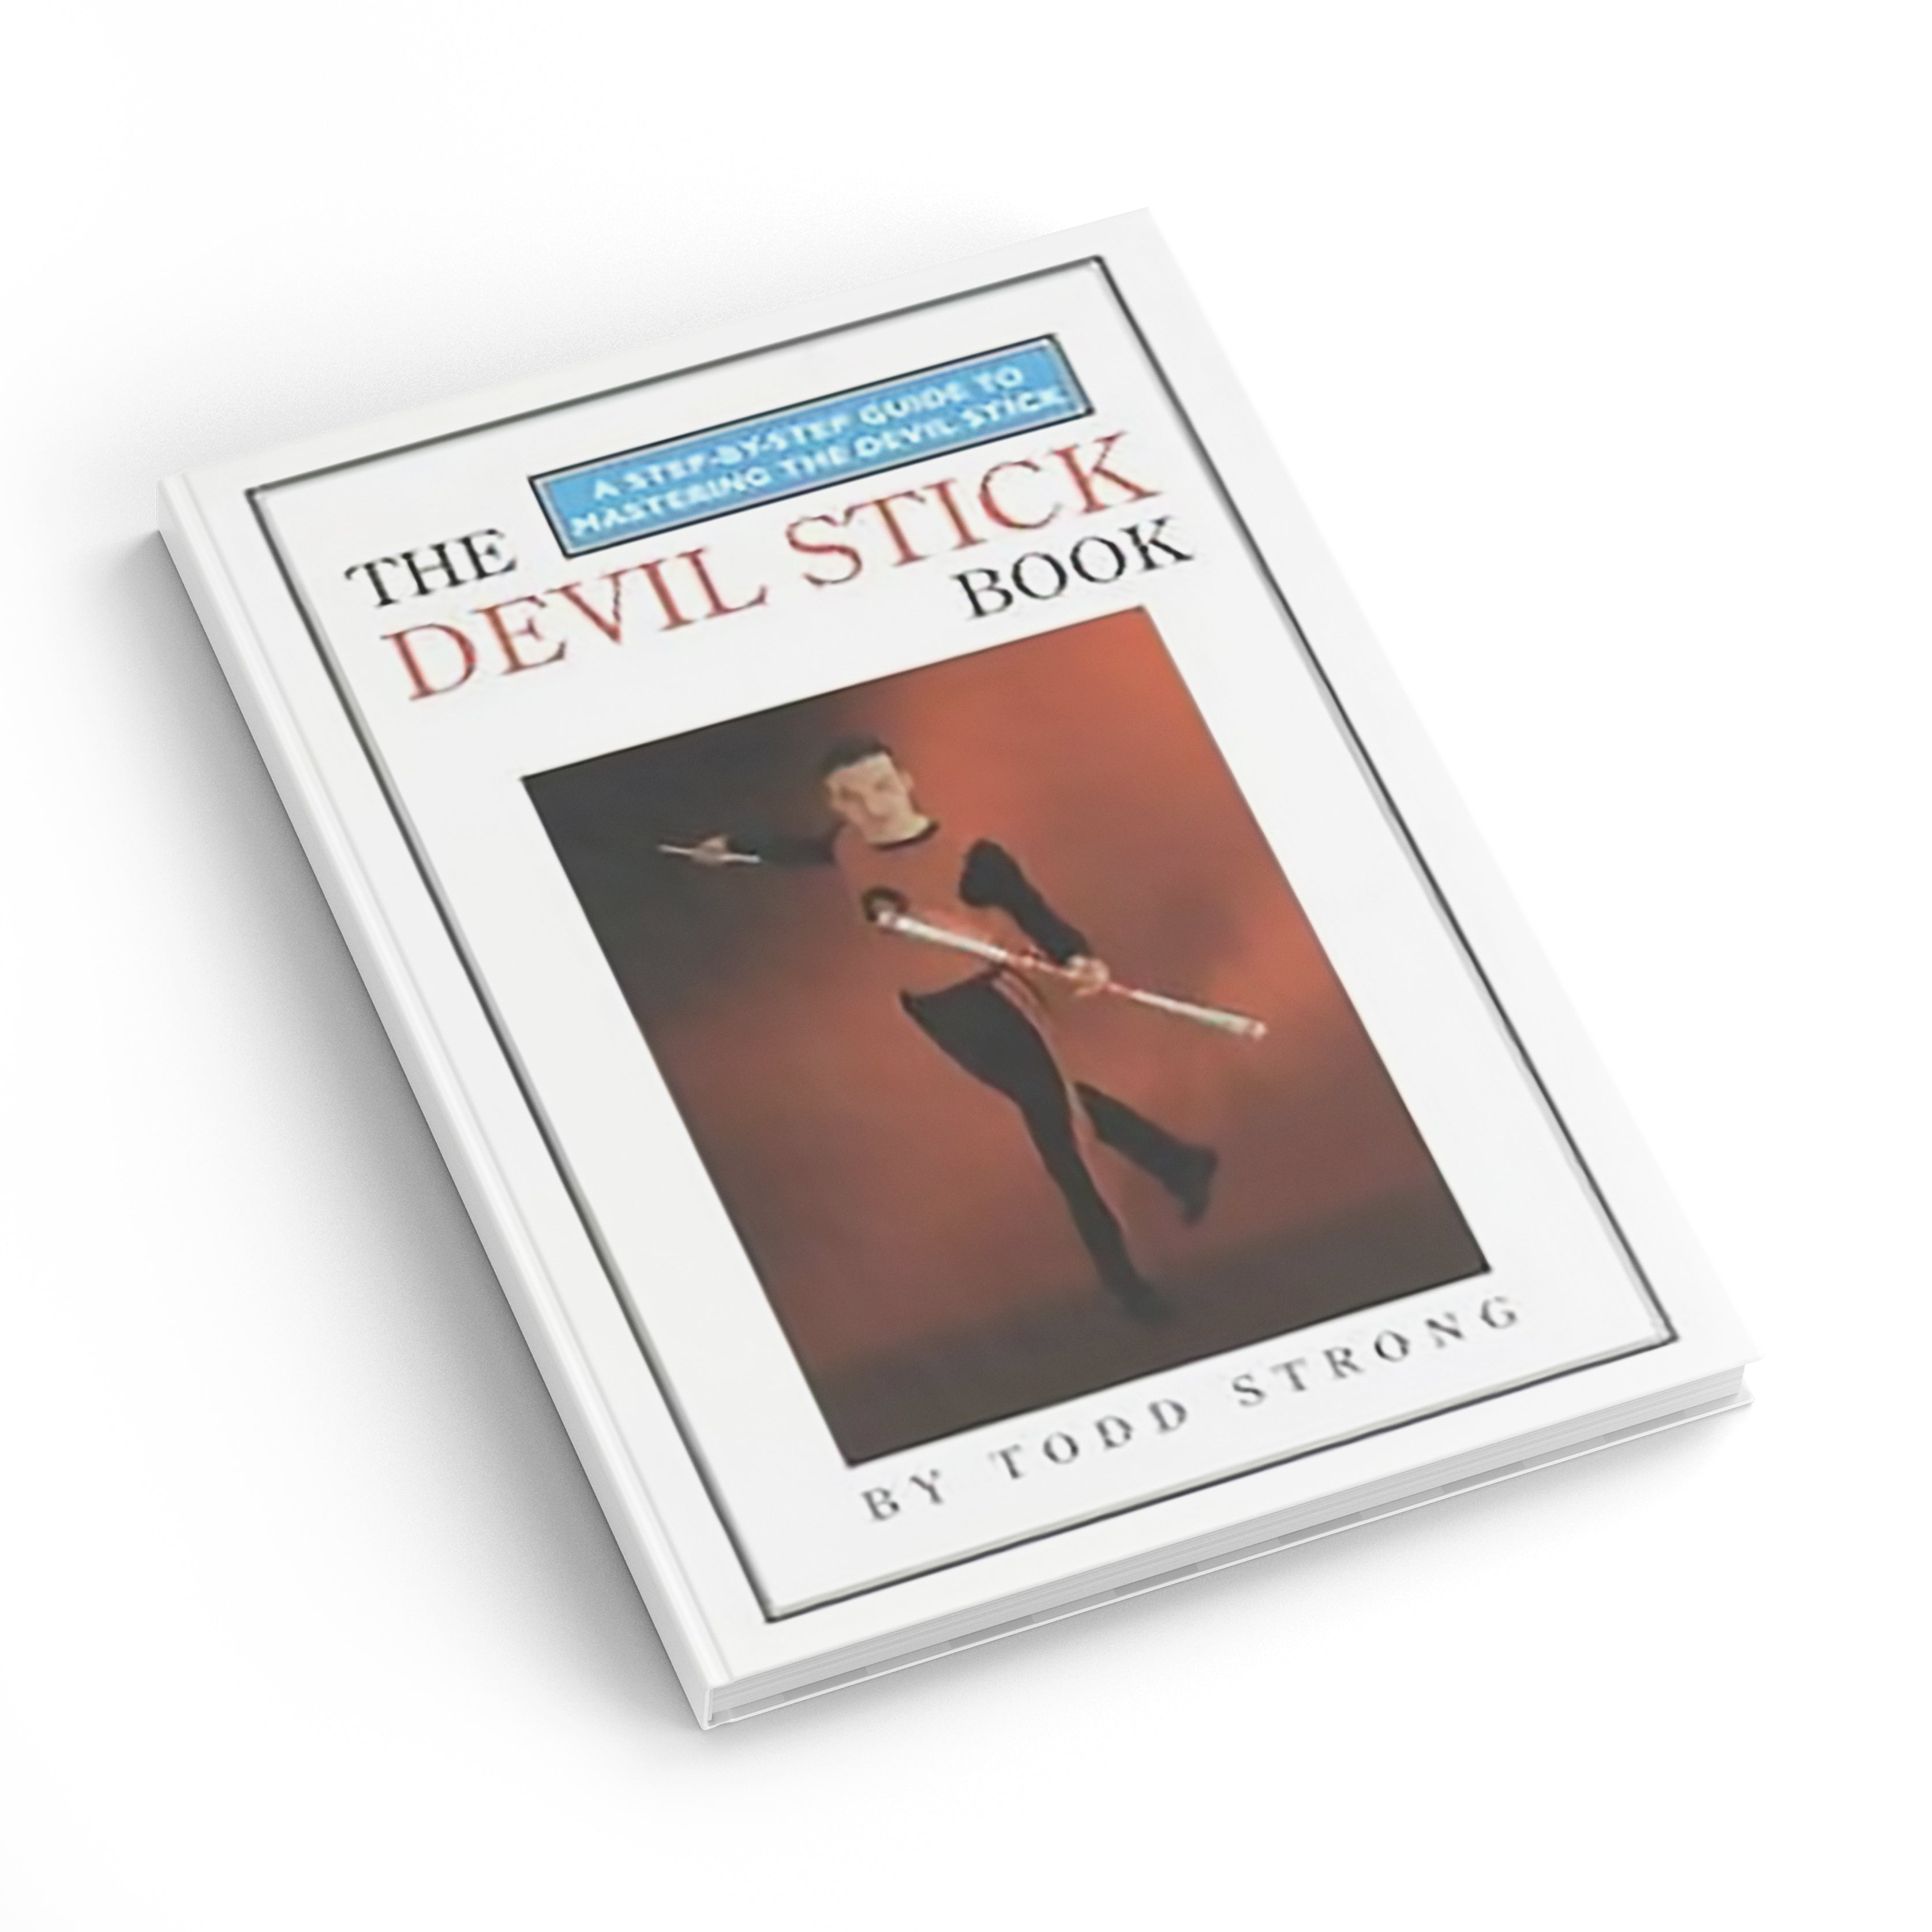 The Devil Stick Book